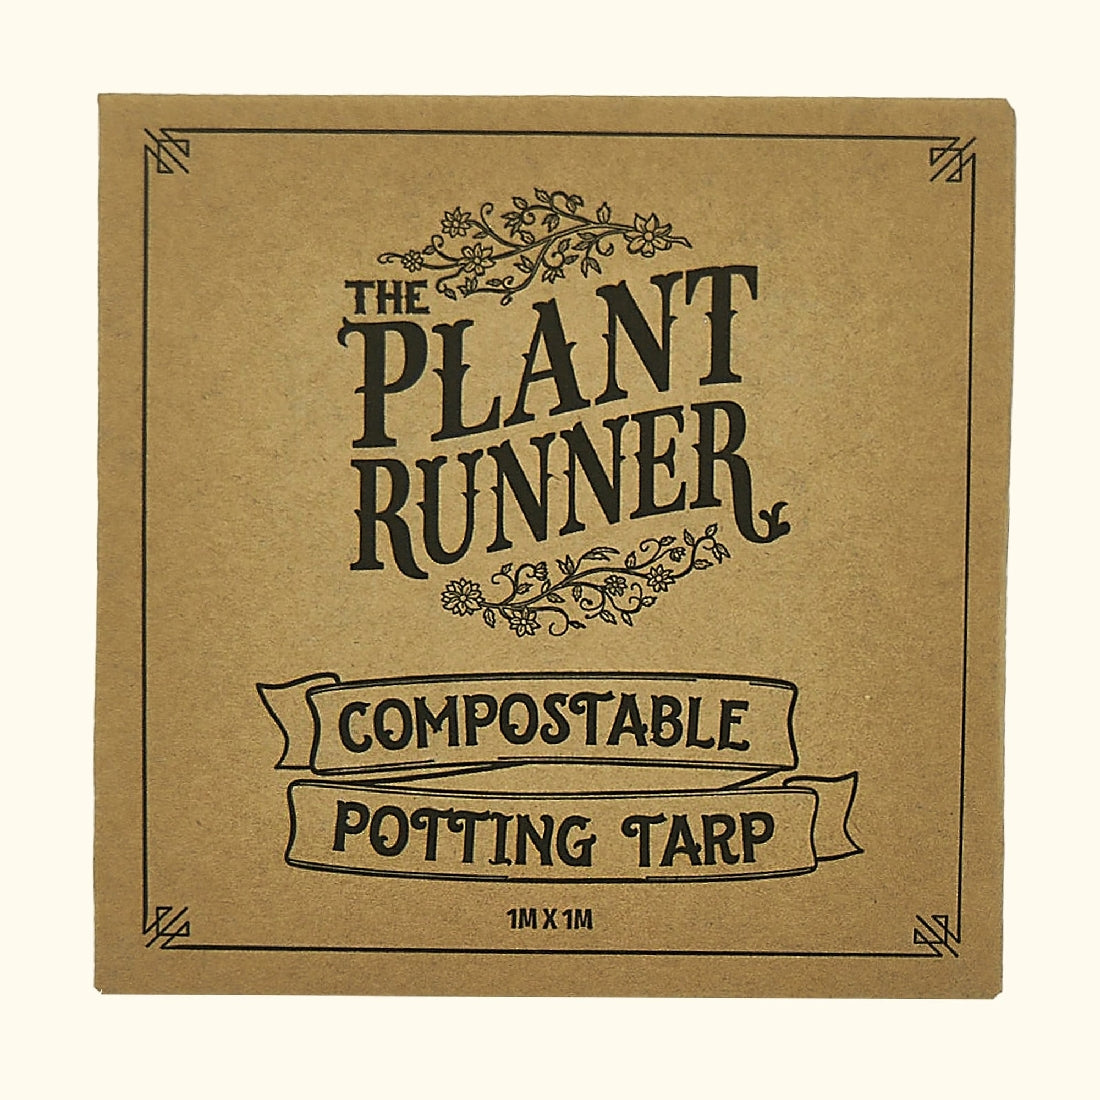 PLANT RUNNER COMPOSTABLE POTTING TARP